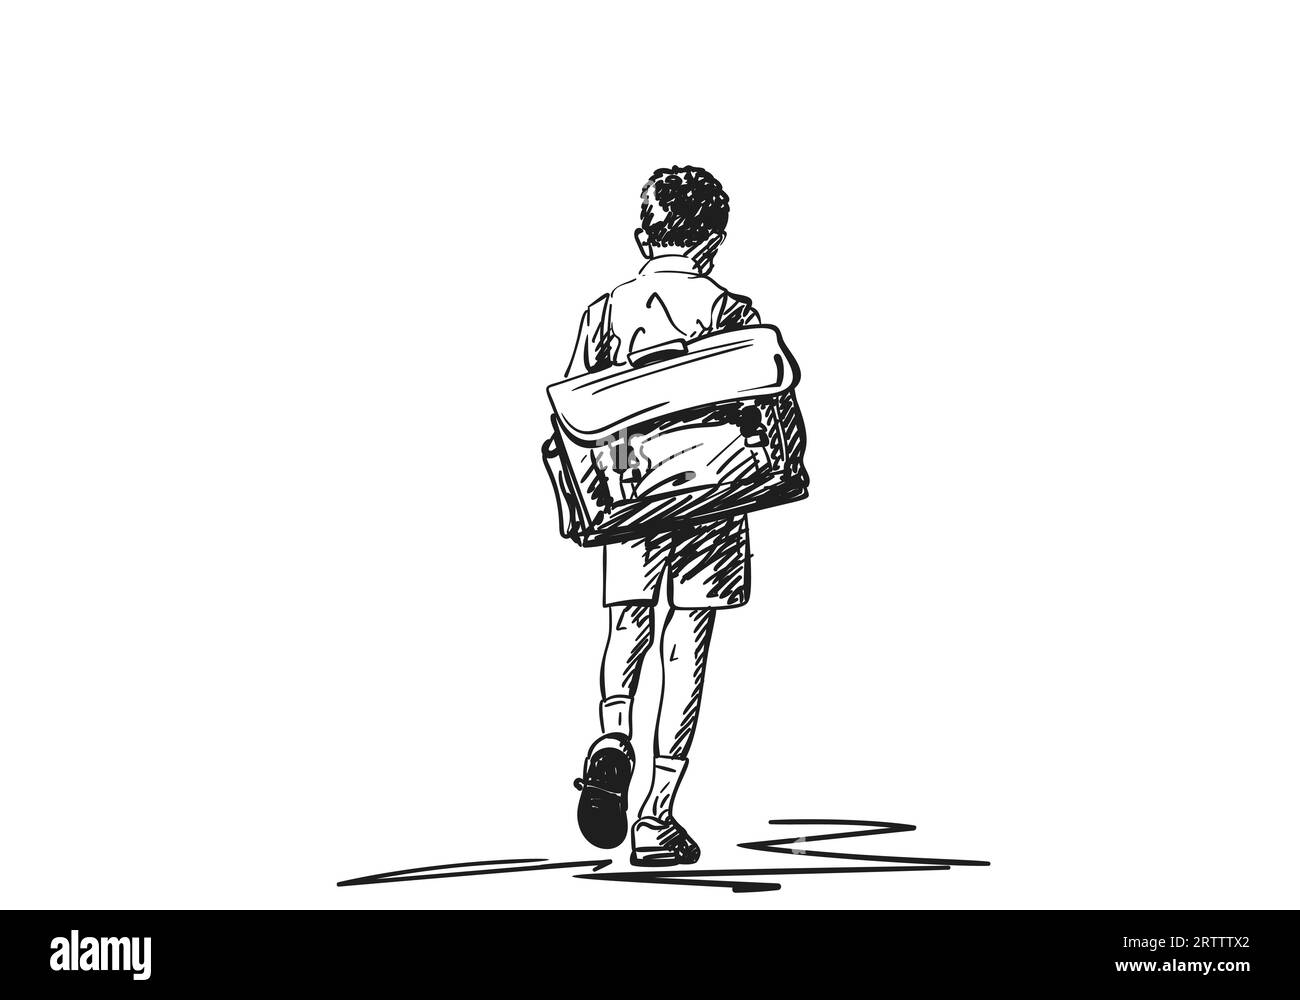 Écolier avec un grand sac à dos rétro marchant avec sa tête vers le bas dessin vectoriel, illustration dessinée à la main sur un écolier de dos, noir et blanc Illustration de Vecteur